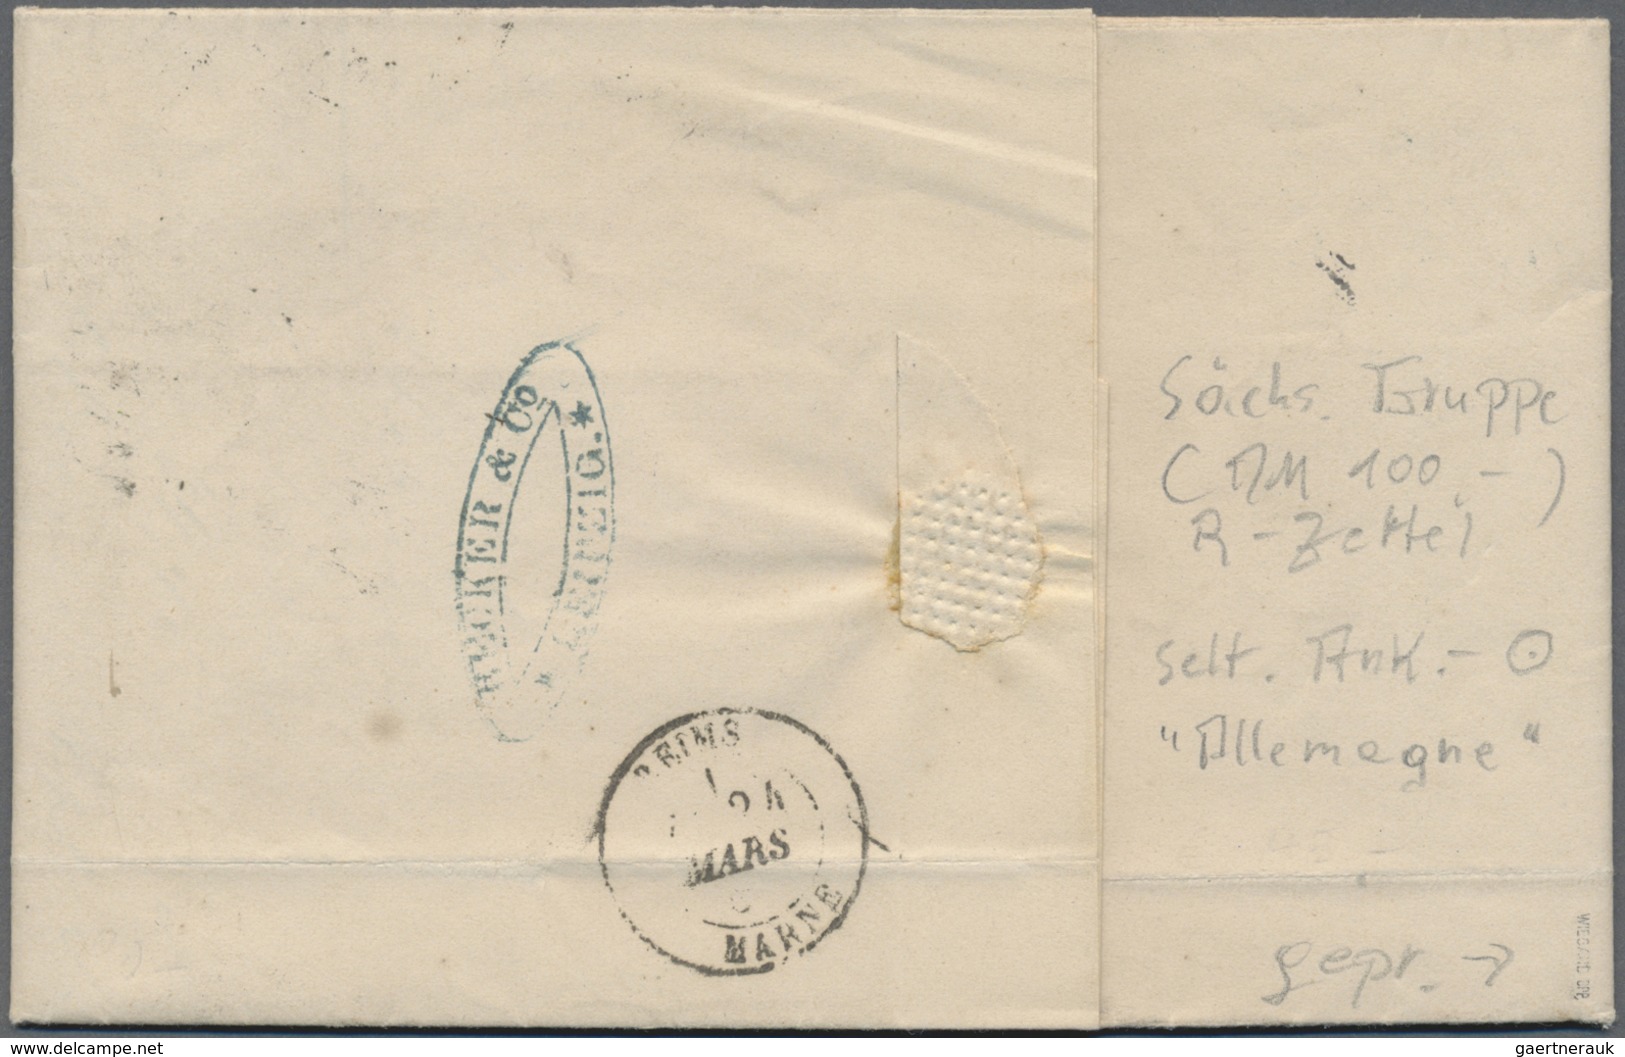 Br Deutsches Reich - Pfennige: 1875, Dreimal 20 Pfge Auf R-Brief Nach Reims Mit K1 „LEIPZIG 1, 22 3 80” - Briefe U. Dokumente